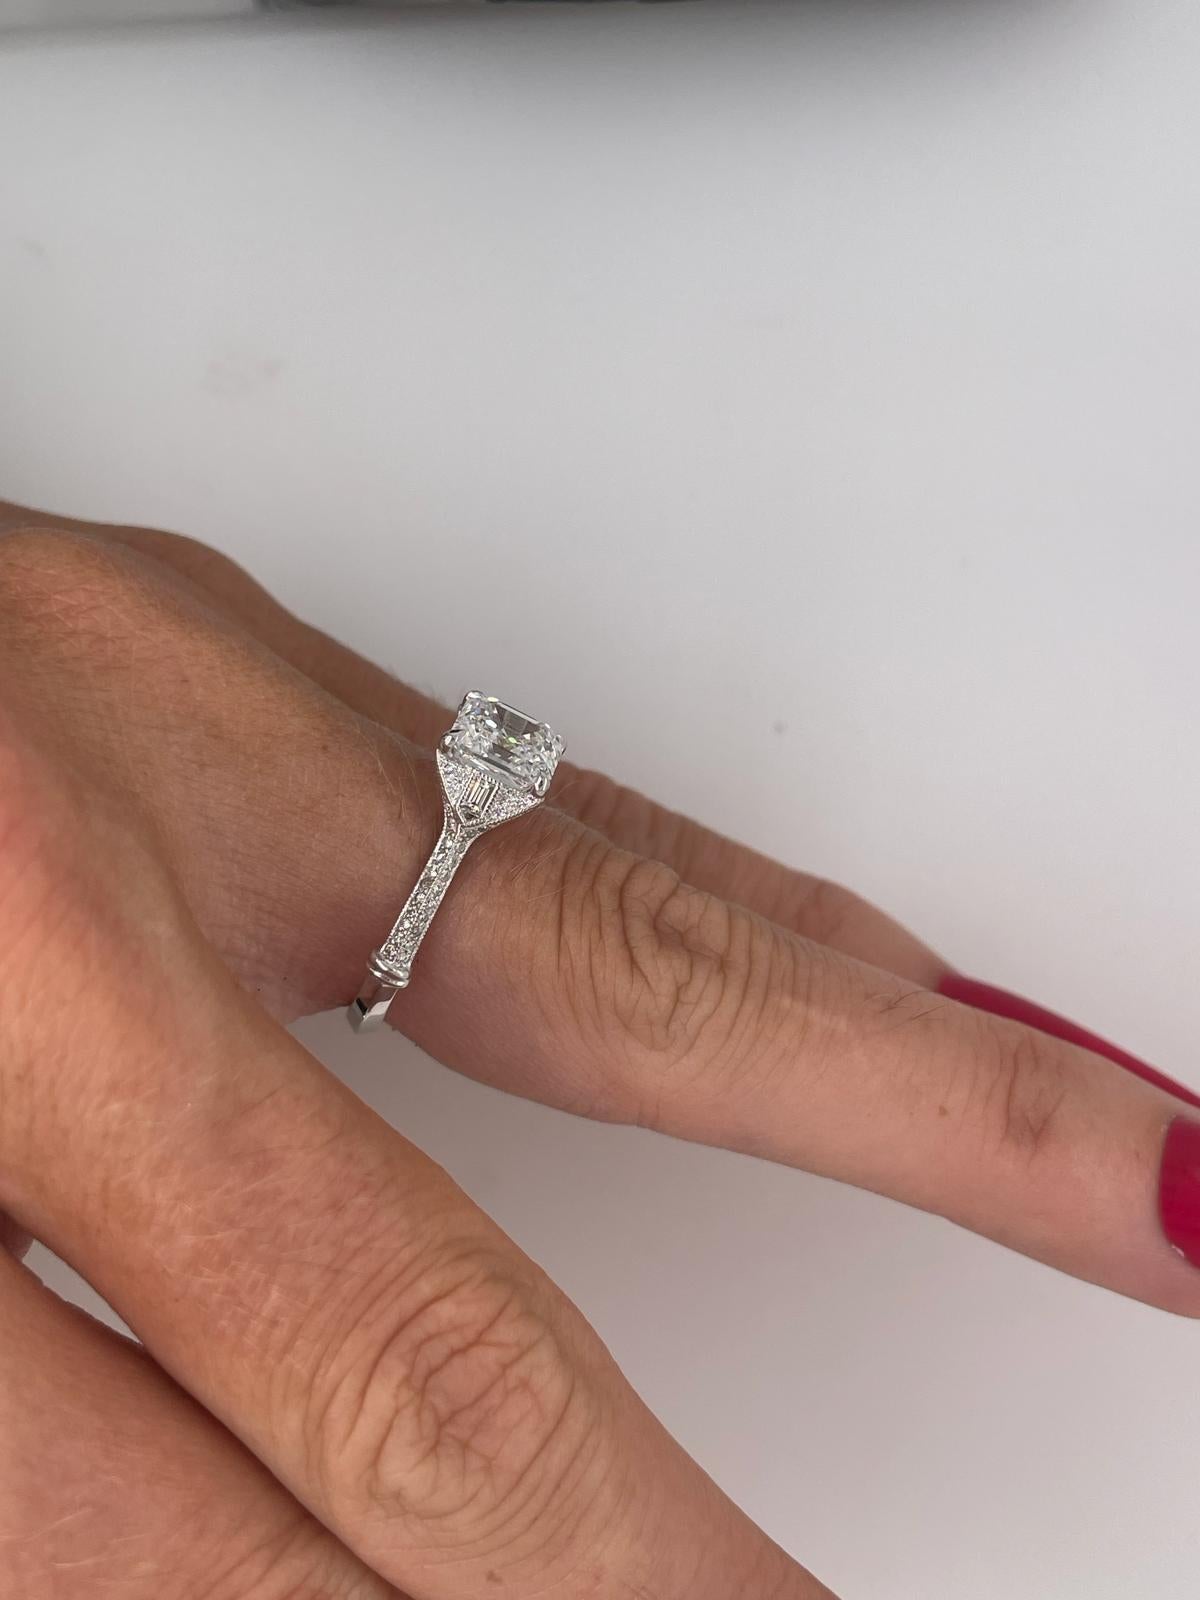 For Sale:  2ct Art Deco asscher cut diamond ring 16